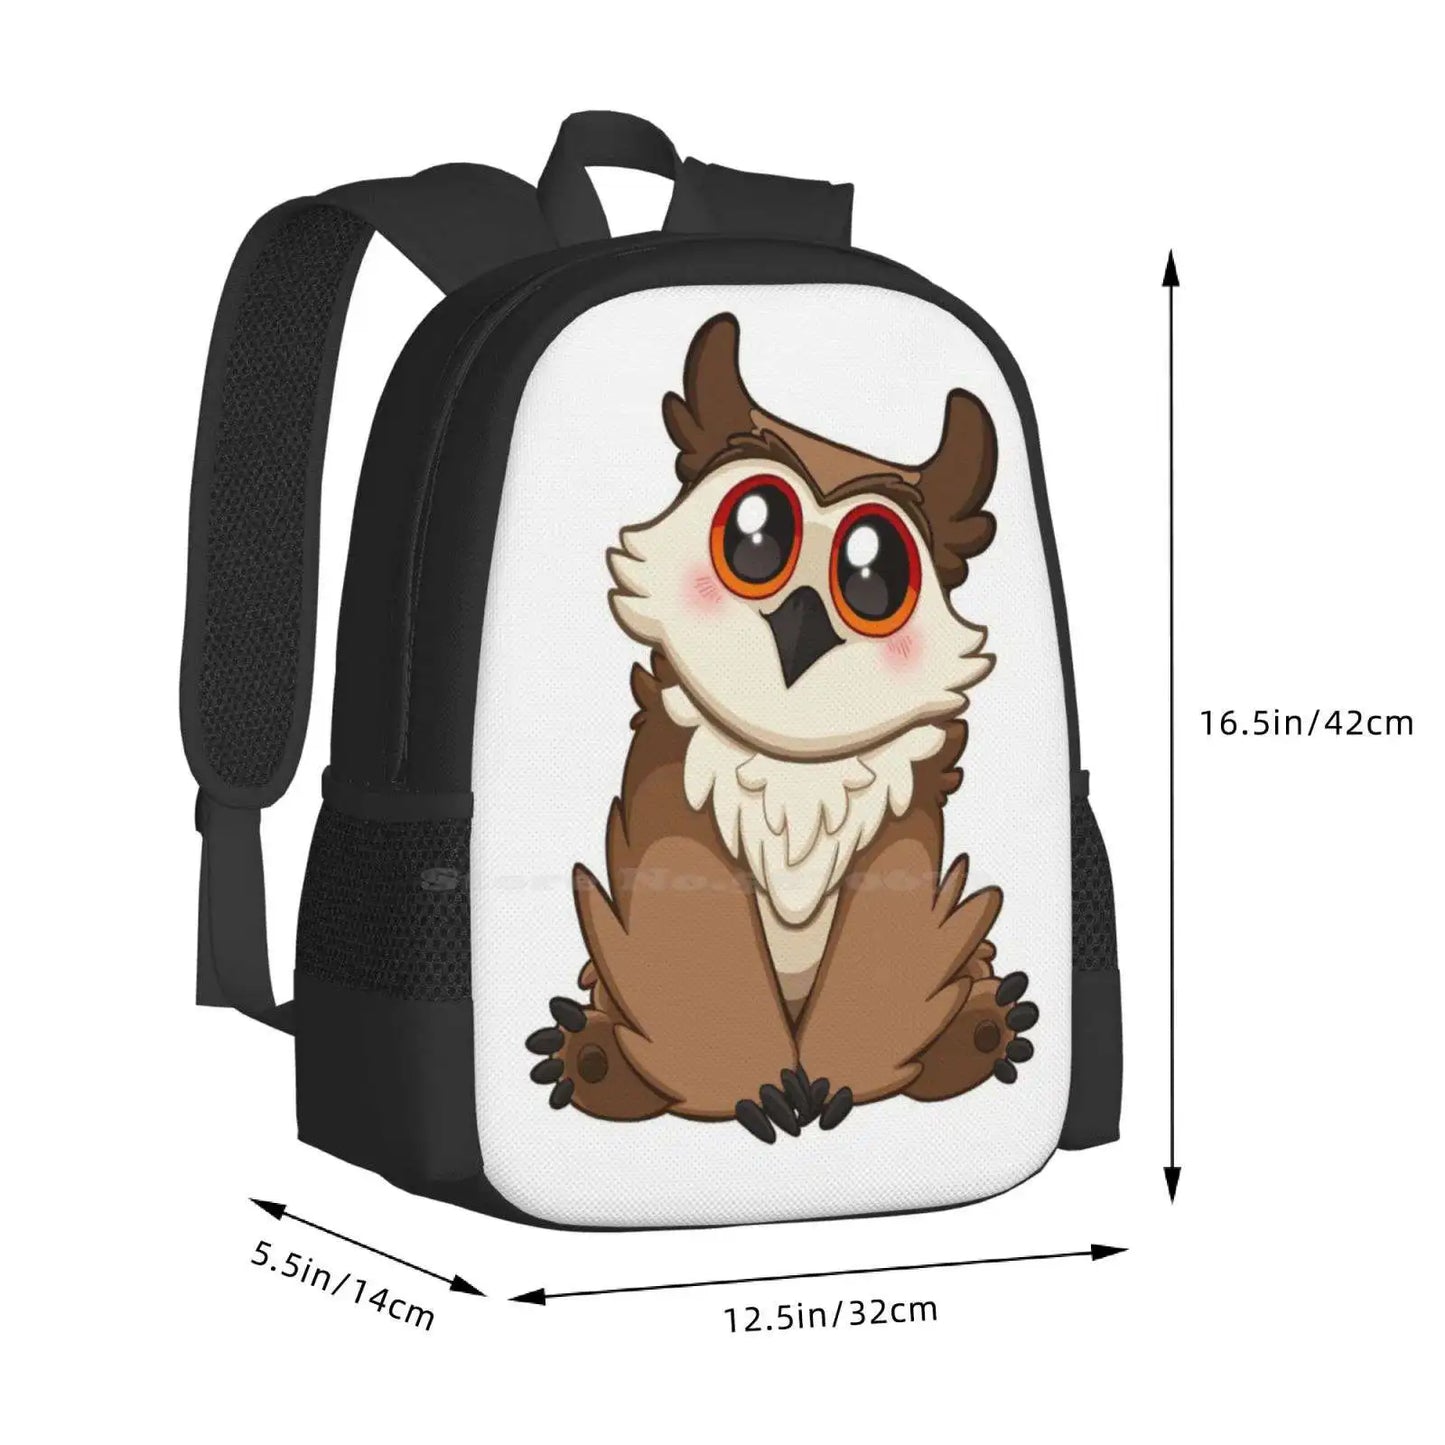 Adorable Owlbear - Mignon D&amp;D Adventures Sacs d'école Sac à dos de voyage pour ordinateur portable Owlbear Owl Bear And Dragons Dnd Waffles Waffle Crew